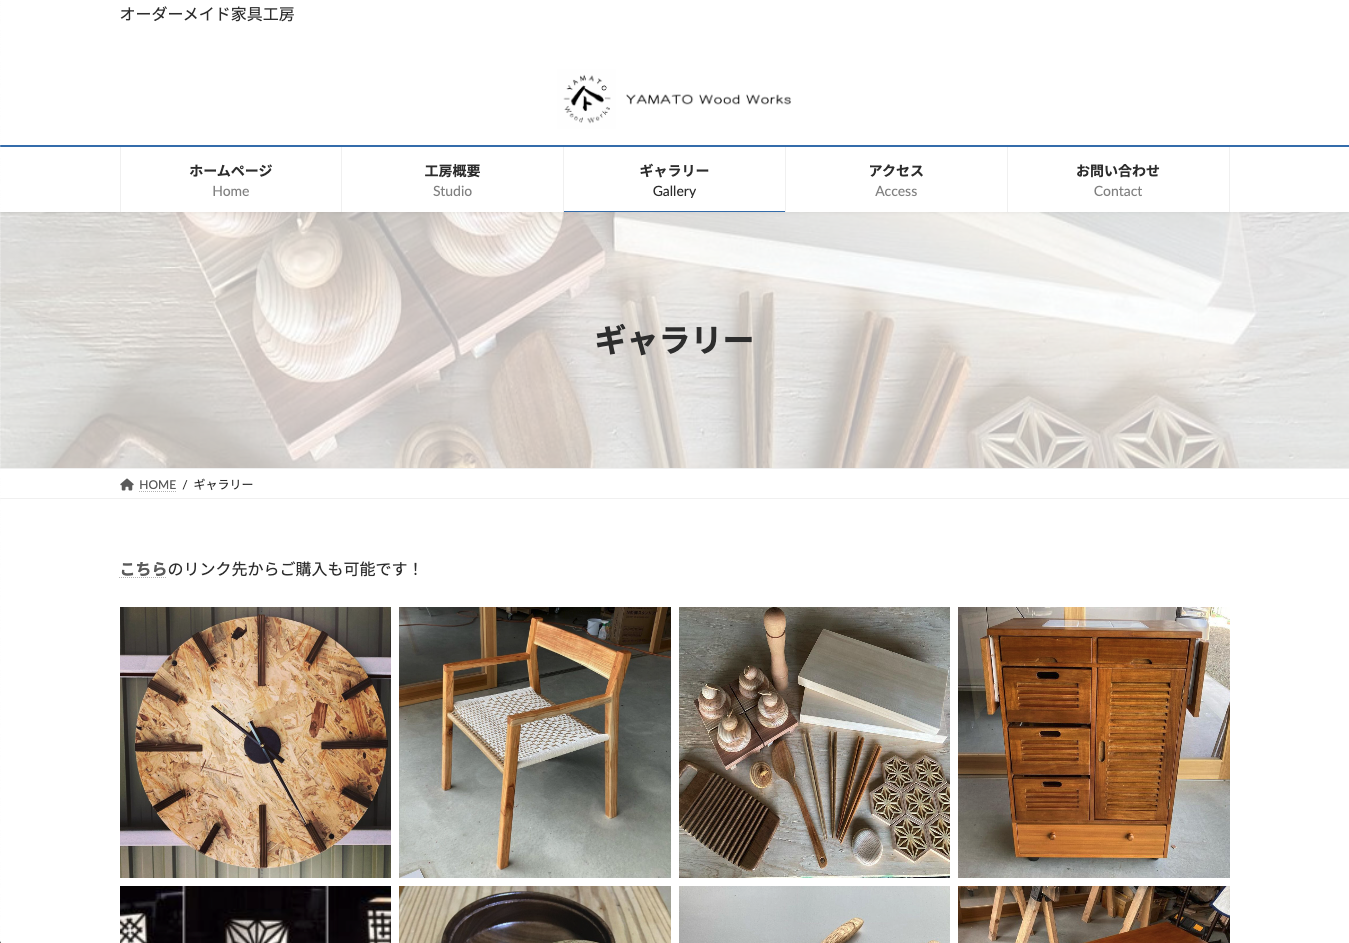 YAMATO Wood Worksのホームページイメージ3